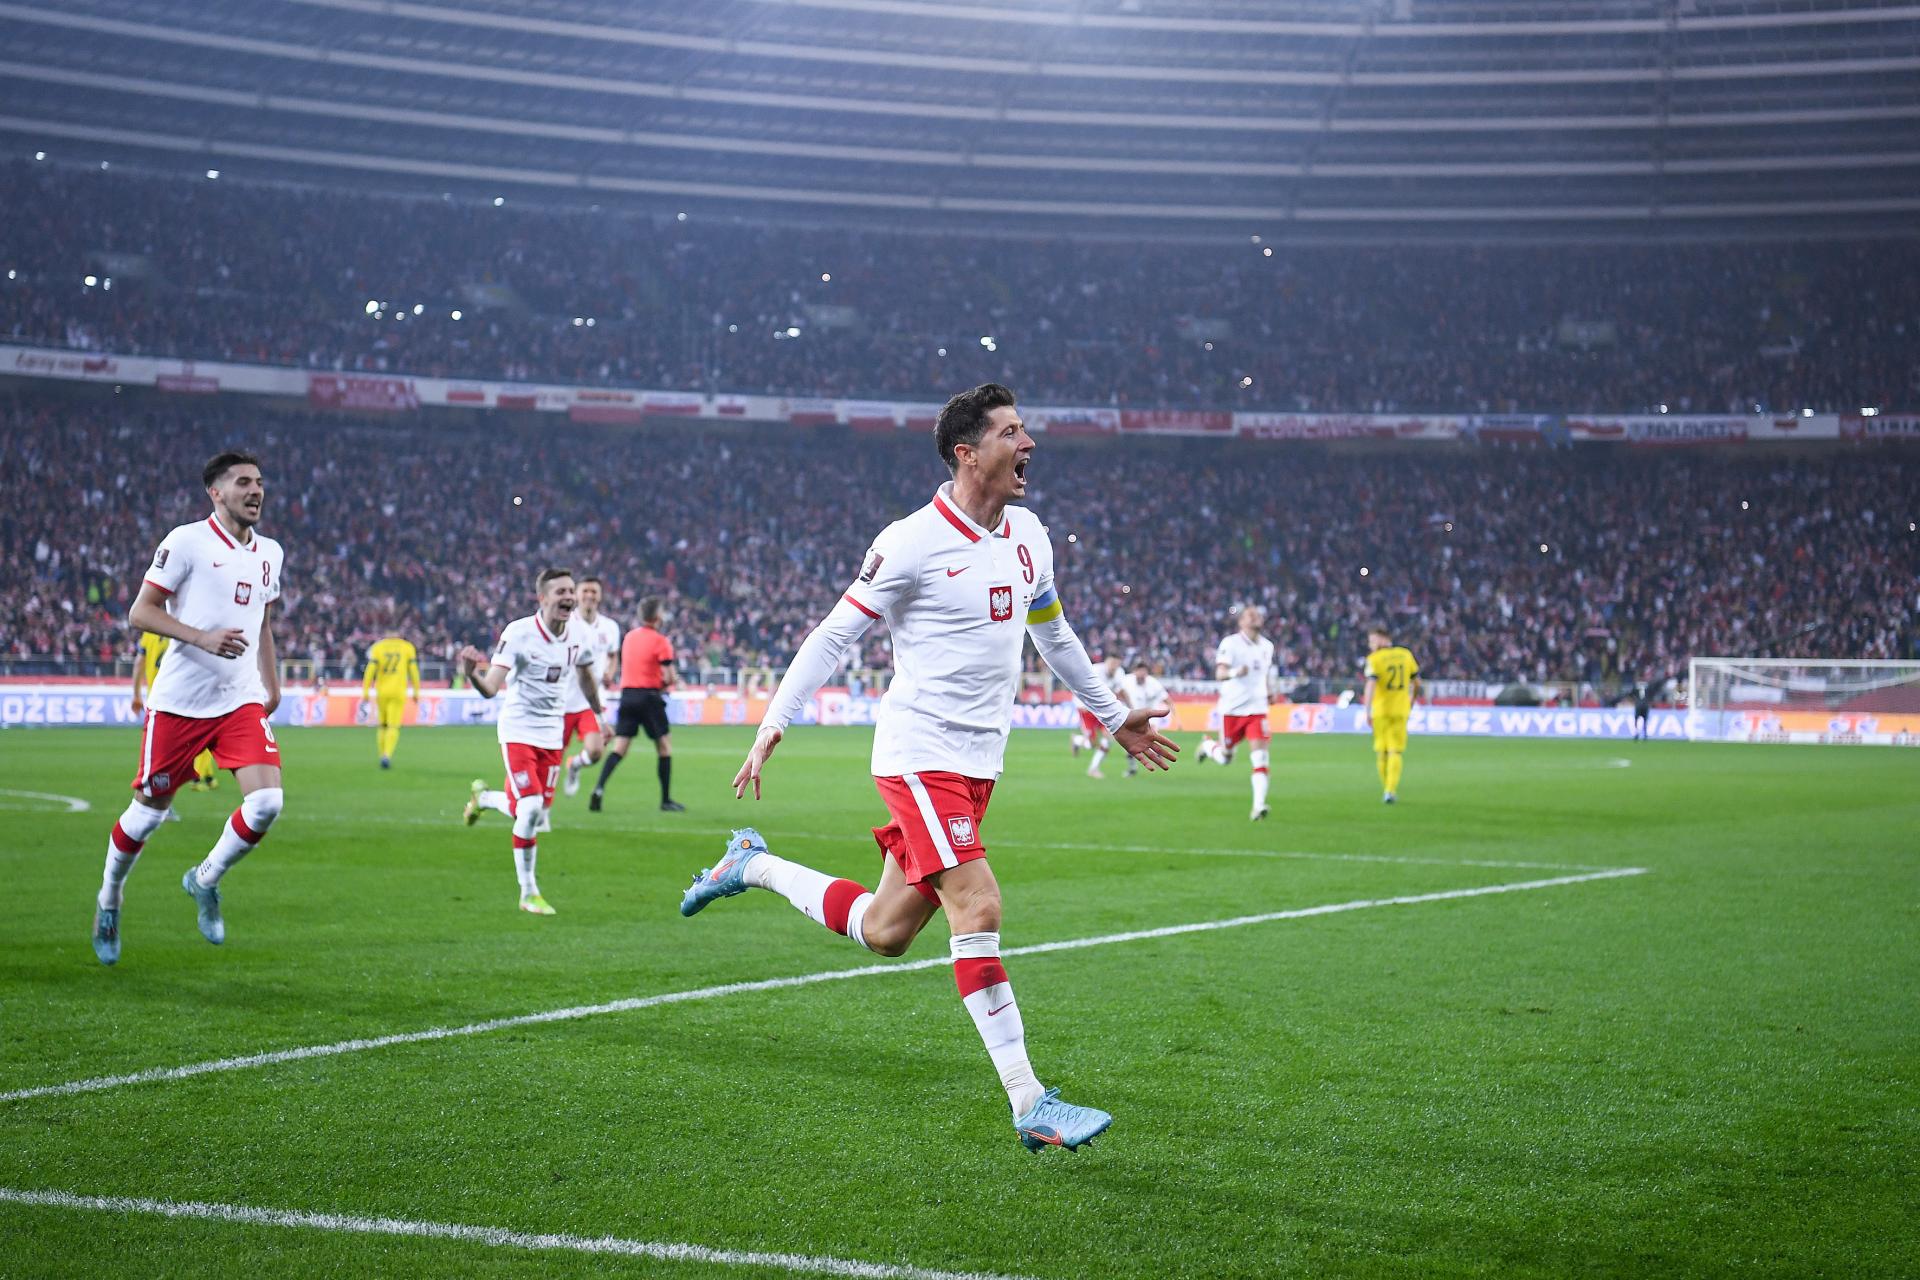 Polska - Szwecja 2:0 (29.03.2022)